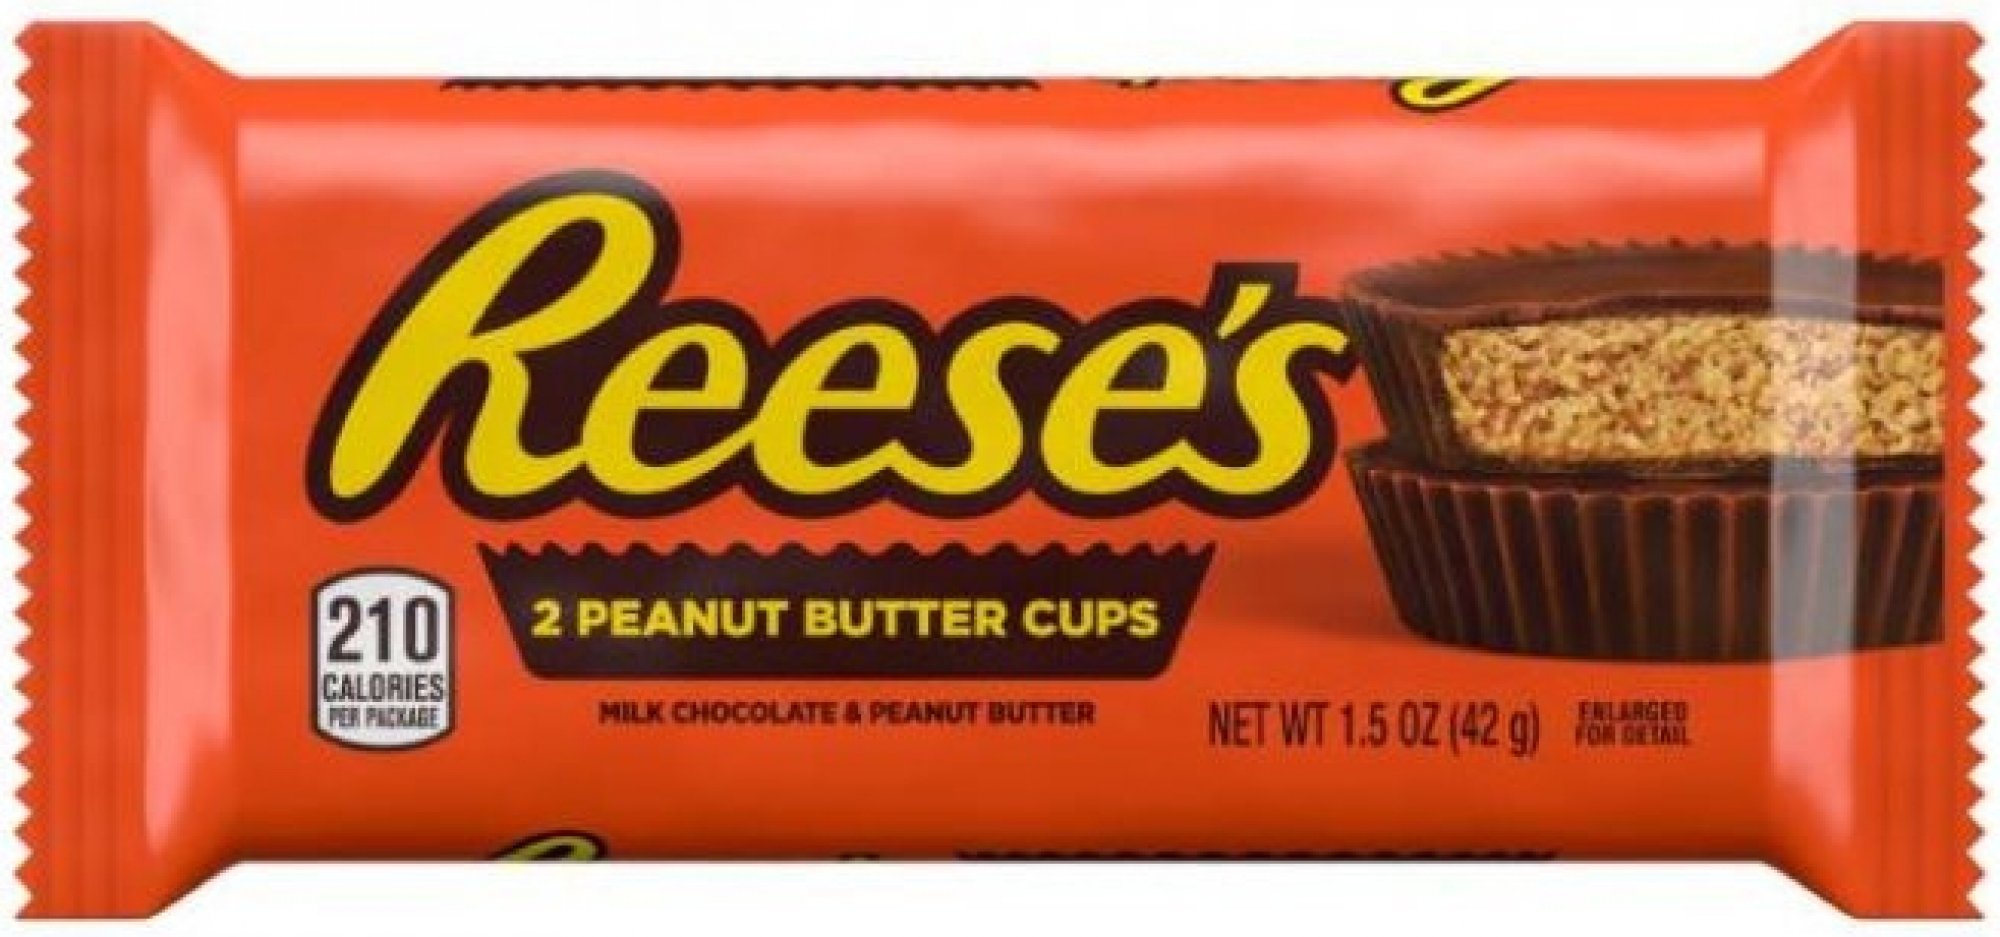 Reeses 2 peanut butter cups 42 g Popis: Reeses košíčky z mléčné čokolády plněné arašídovým máslem
Složení: čokoládová poleva (cukr, kakaové máslo, kakaová hmota, odtučněný mléčný prášek, mléčný tuk, laktóza  ...